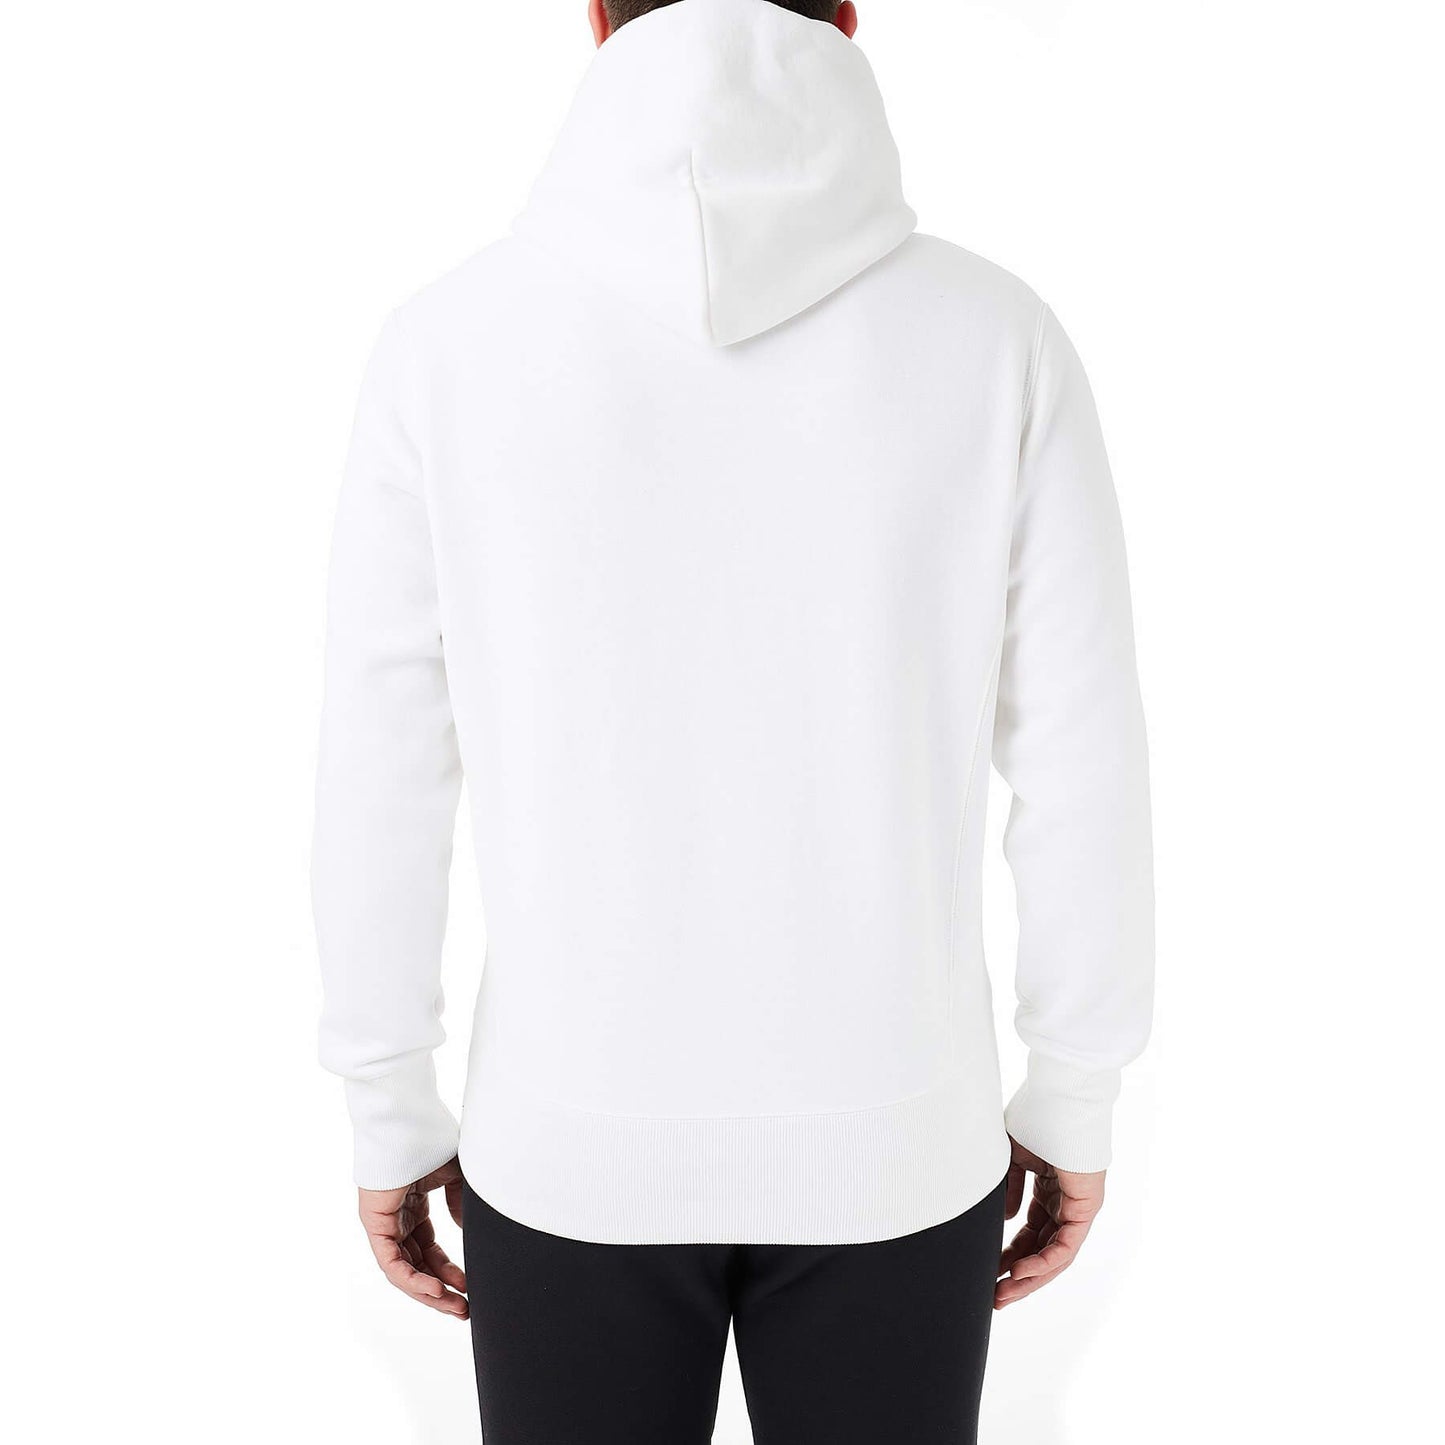 Champion Premium Rwss 1952 Hooded Sweatshirt White